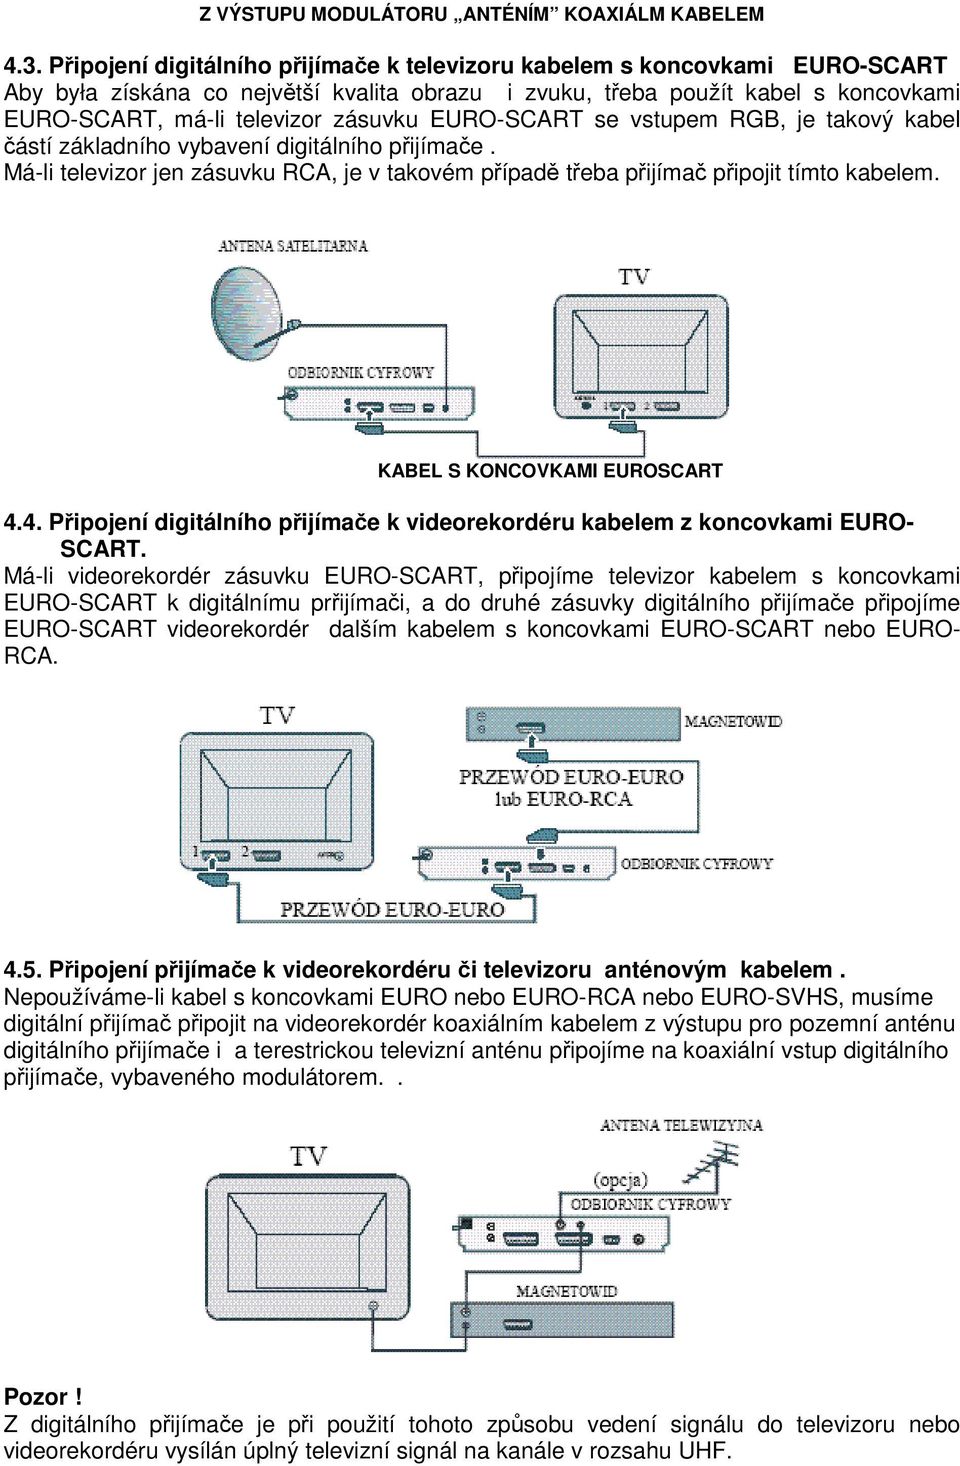 EURO-SCART se vstupem RGB, je takový kabel částí základního vybavení digitálního přijímače. Má-li televizor jen zásuvku RCA, je v takovém případě třeba přijímač připojit tímto kabelem.